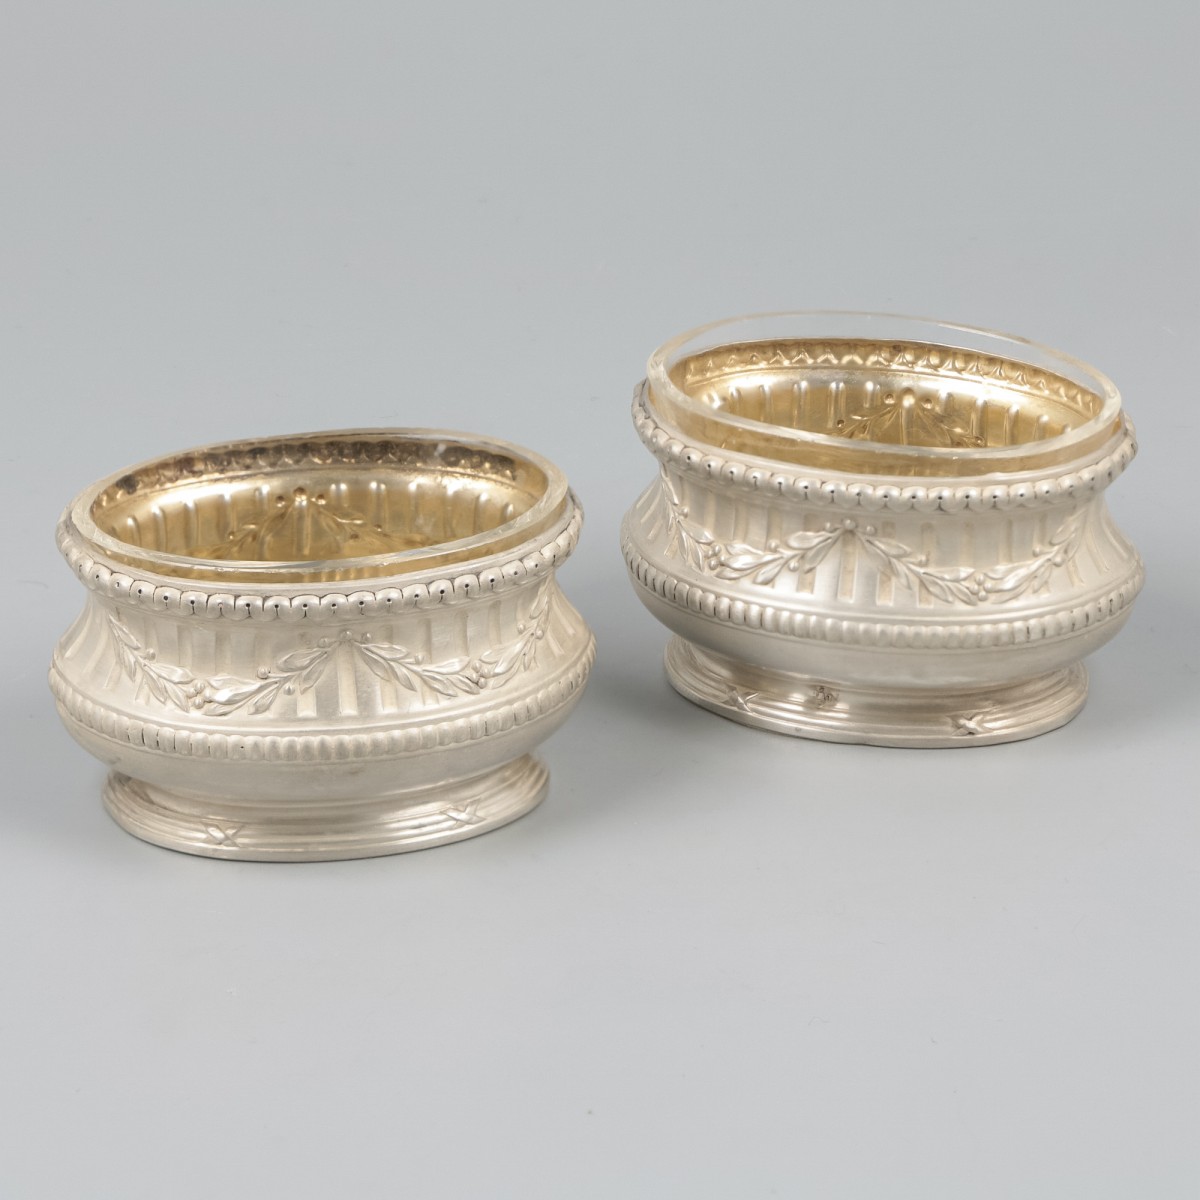 2-delige set zoutkelders (Paul Devaux, Parijs ca. 1905) zilver.